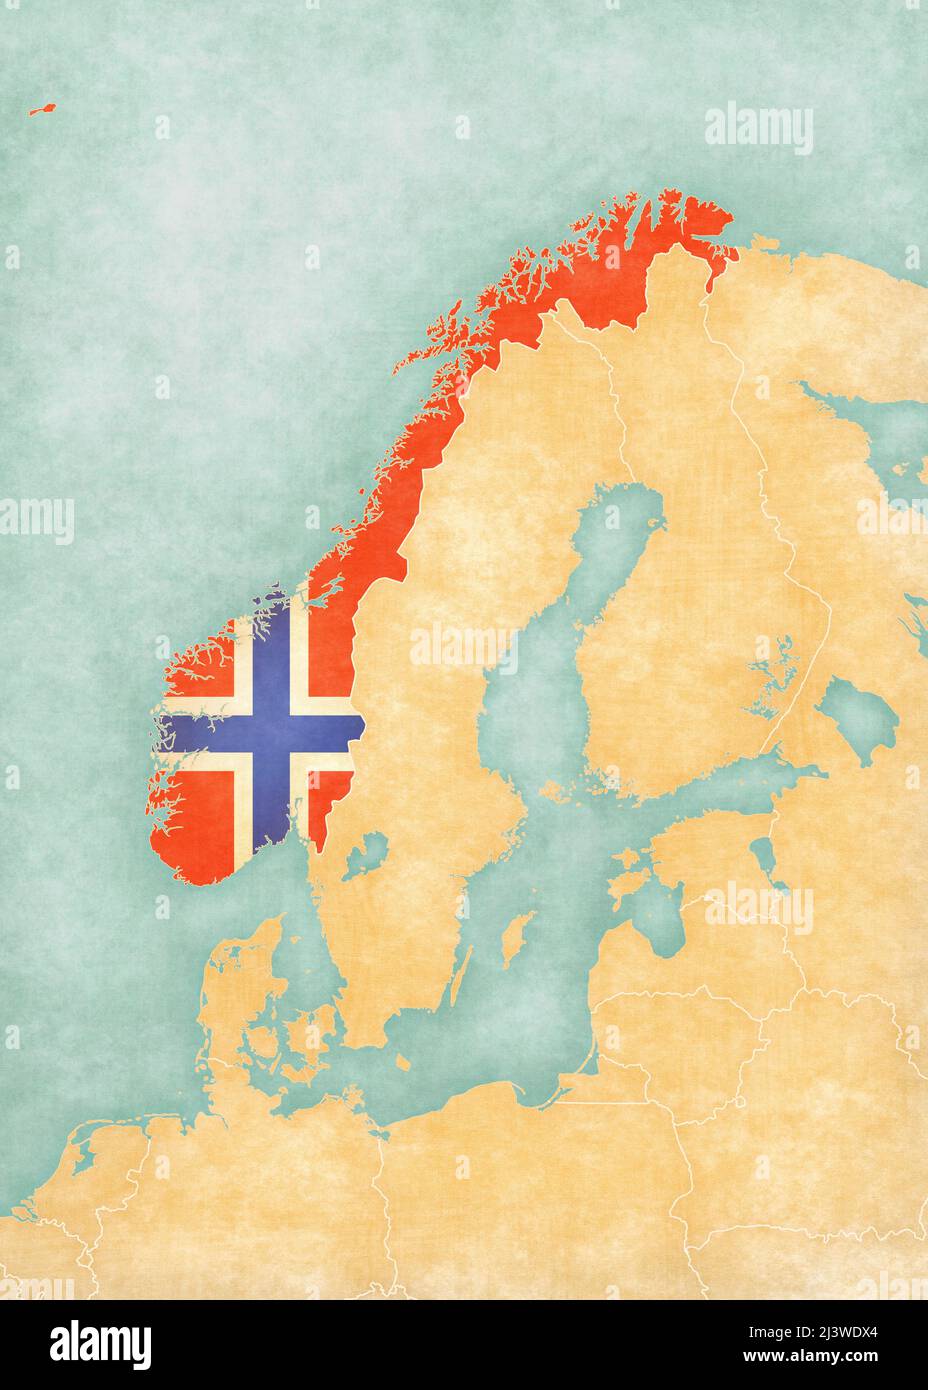 Norwegen (norwegische Flagge) auf der Karte Skandinaviens in sanftem Grunge- und Vintage-Stil, wie Aquarellmalerei auf altem Papier. Stockfoto